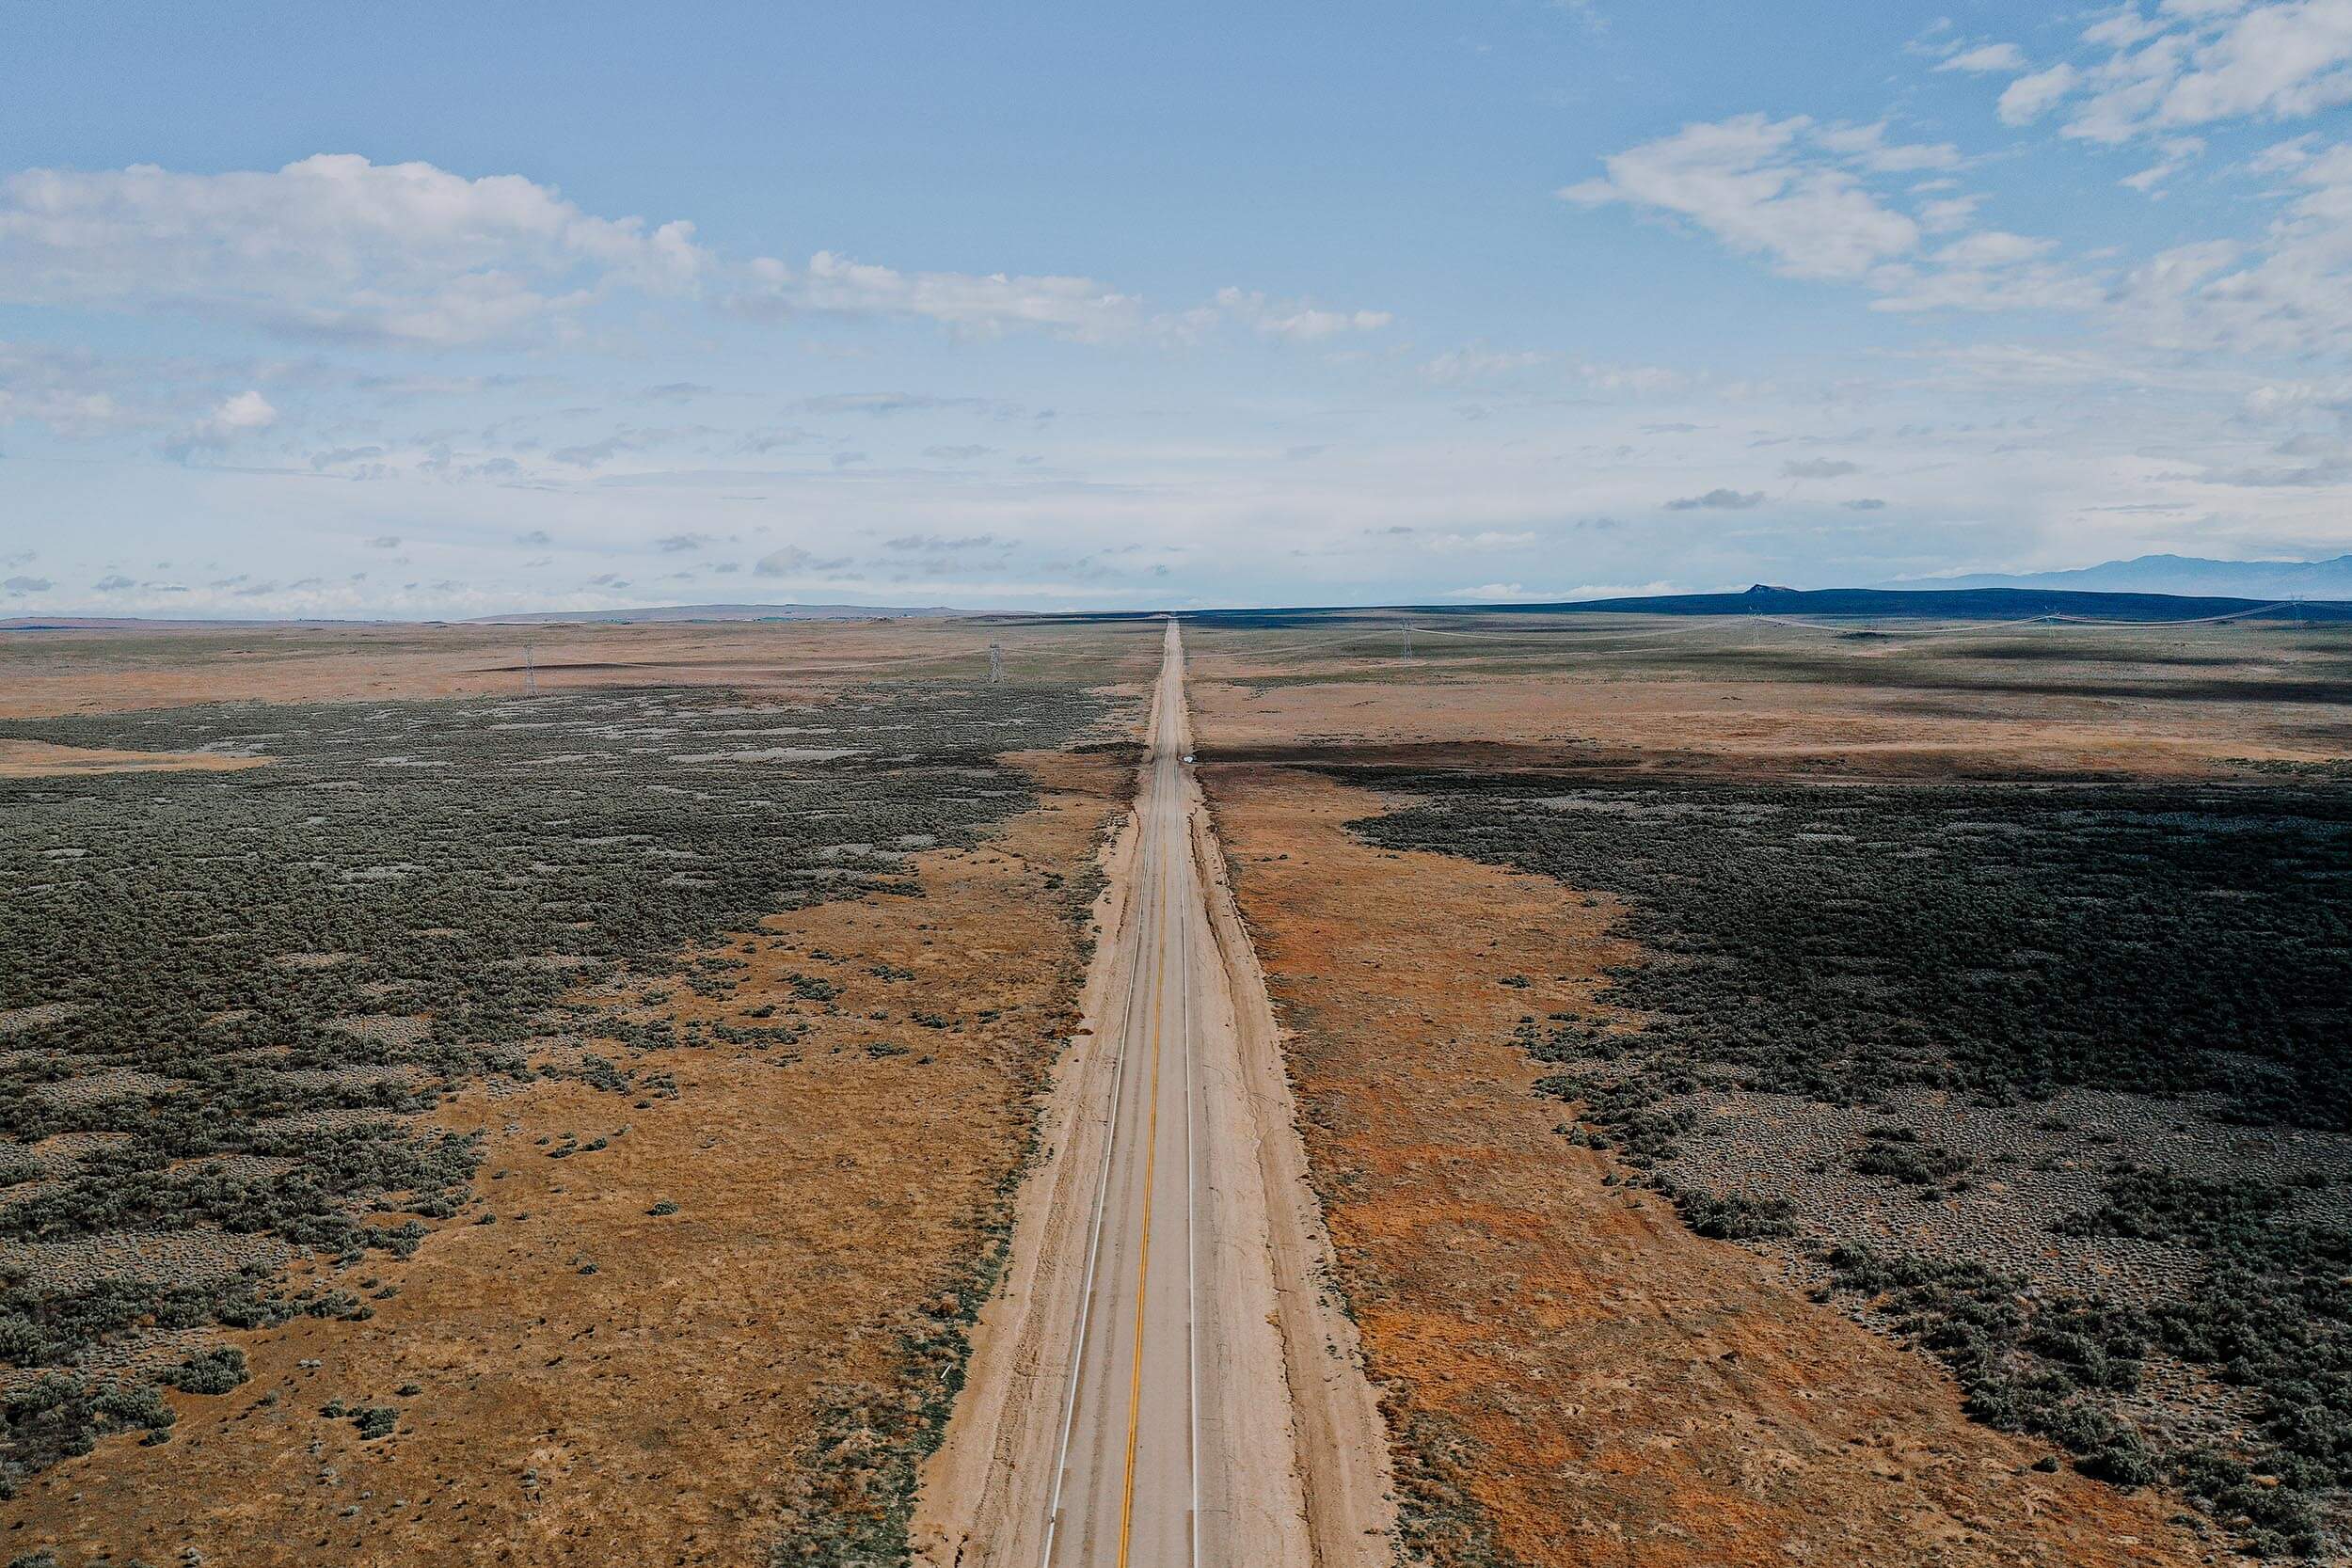 a long stretch of road running through a desert landscape